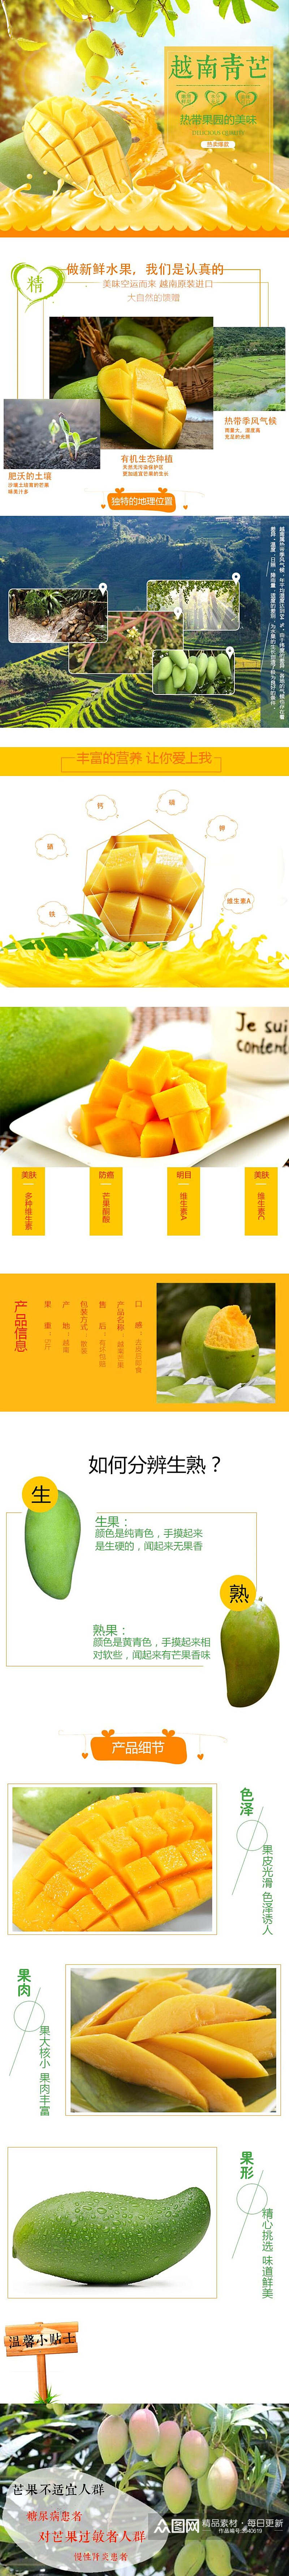 精品越南青芒水果手机版淘宝详情页素材